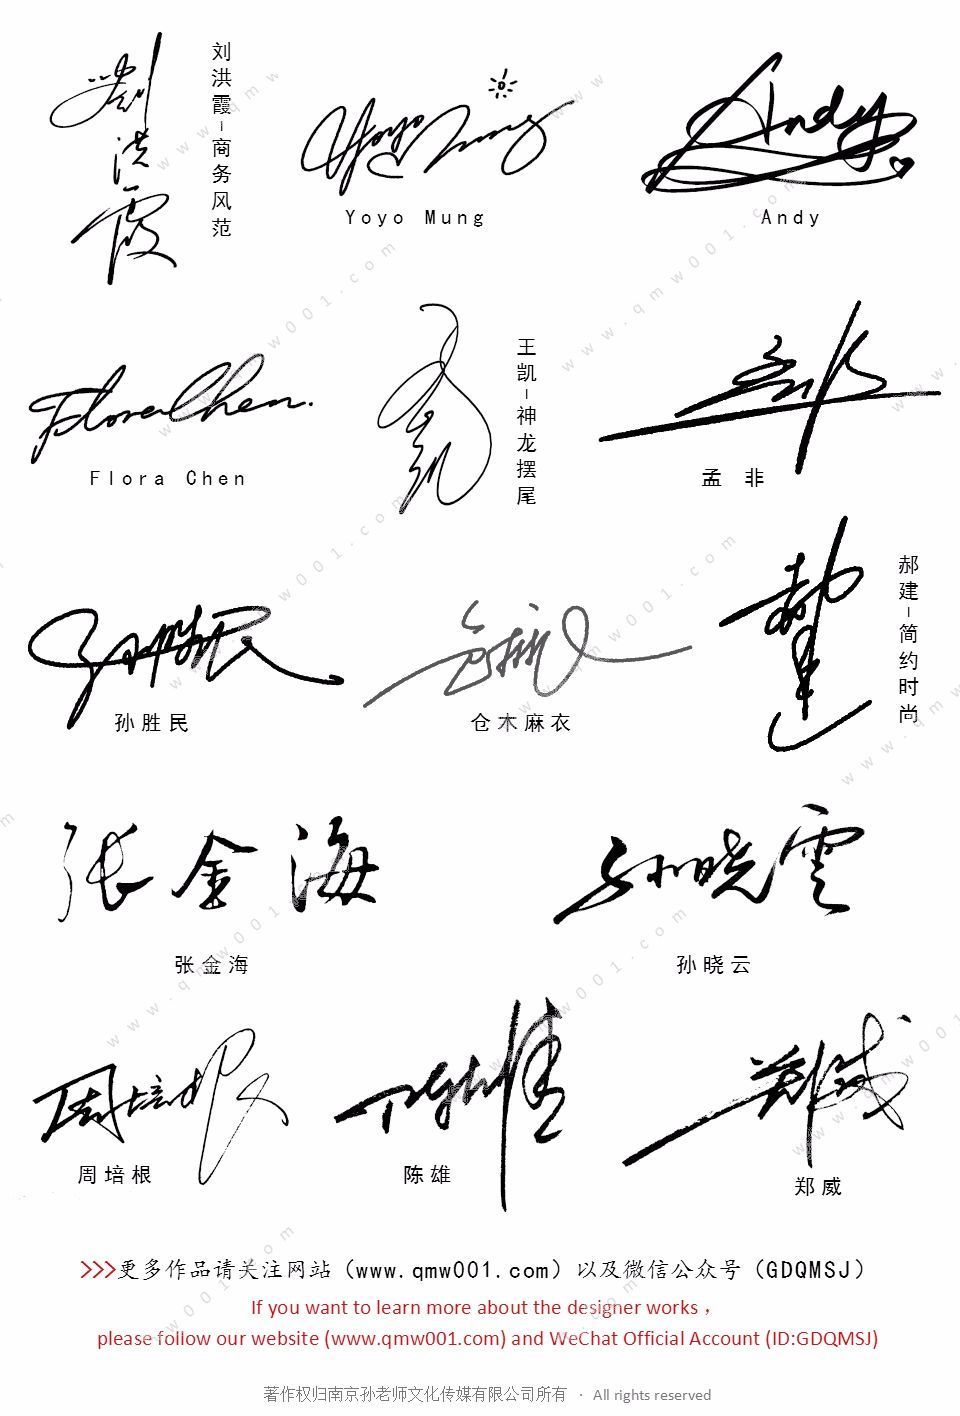 艺术签名丨签名设计丨连笔签名丨商务签名丨明星签名丨签名案例